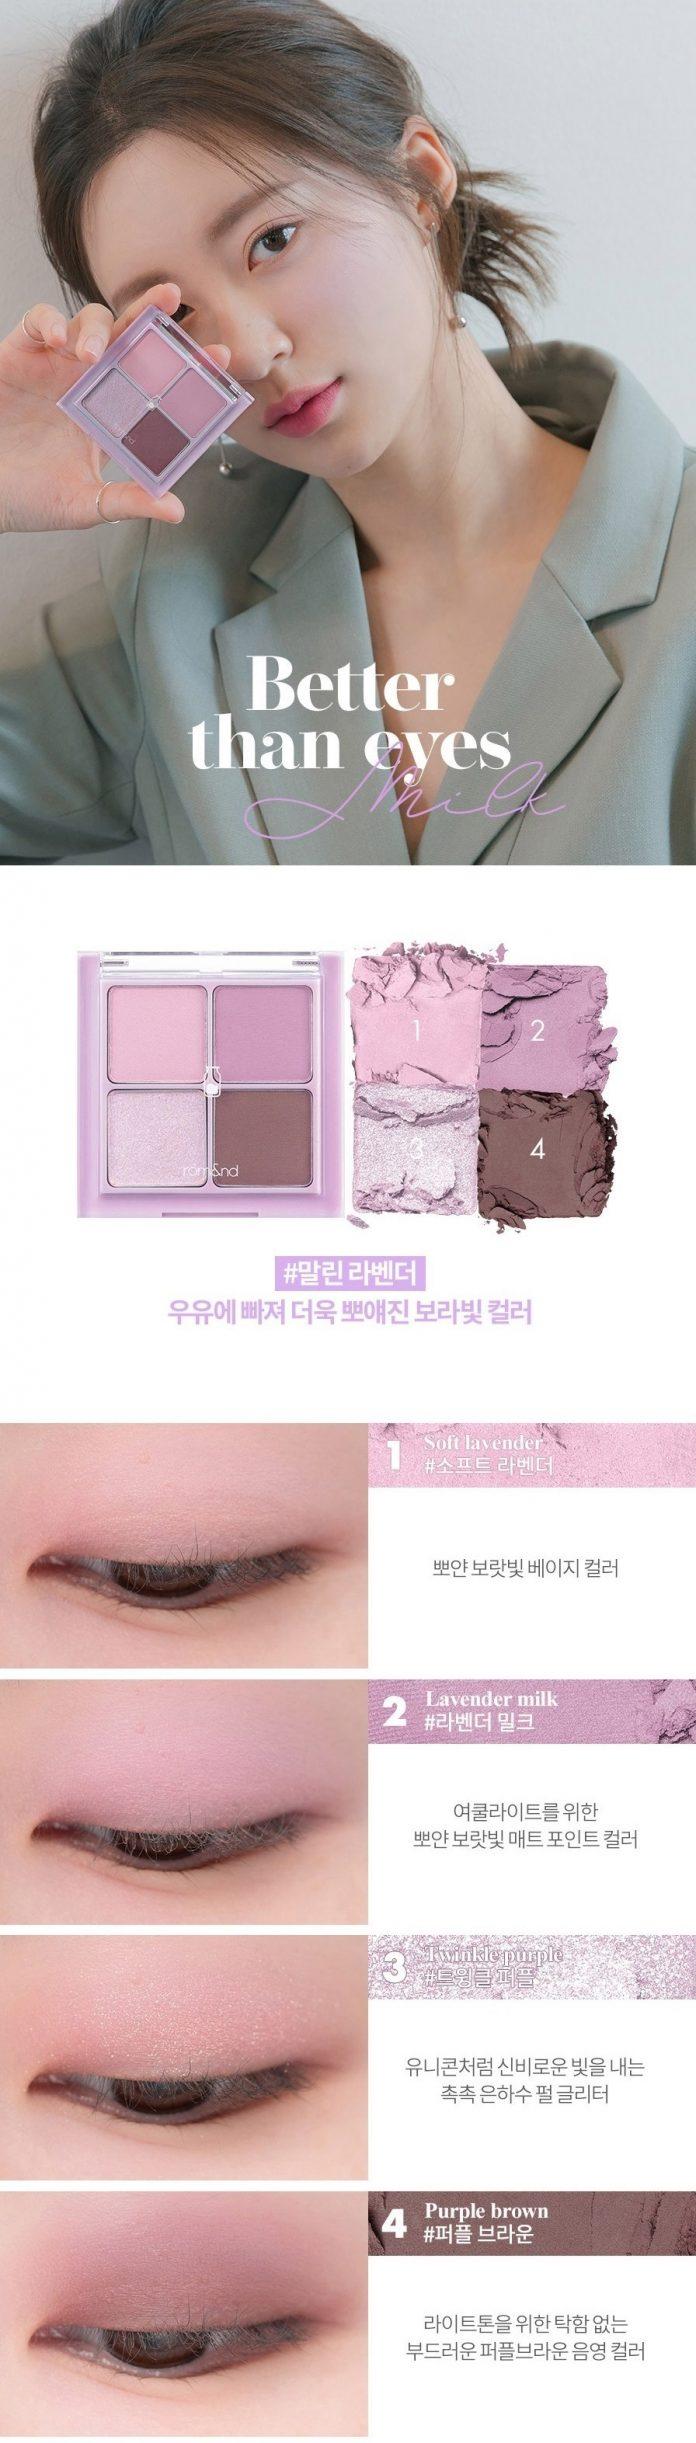 Swatch các màu bảng phấn mắt Rom&nd Better Than Eyes Milk Series 6g - Màu #W01 Dry Lavender. (nguồn: internet)